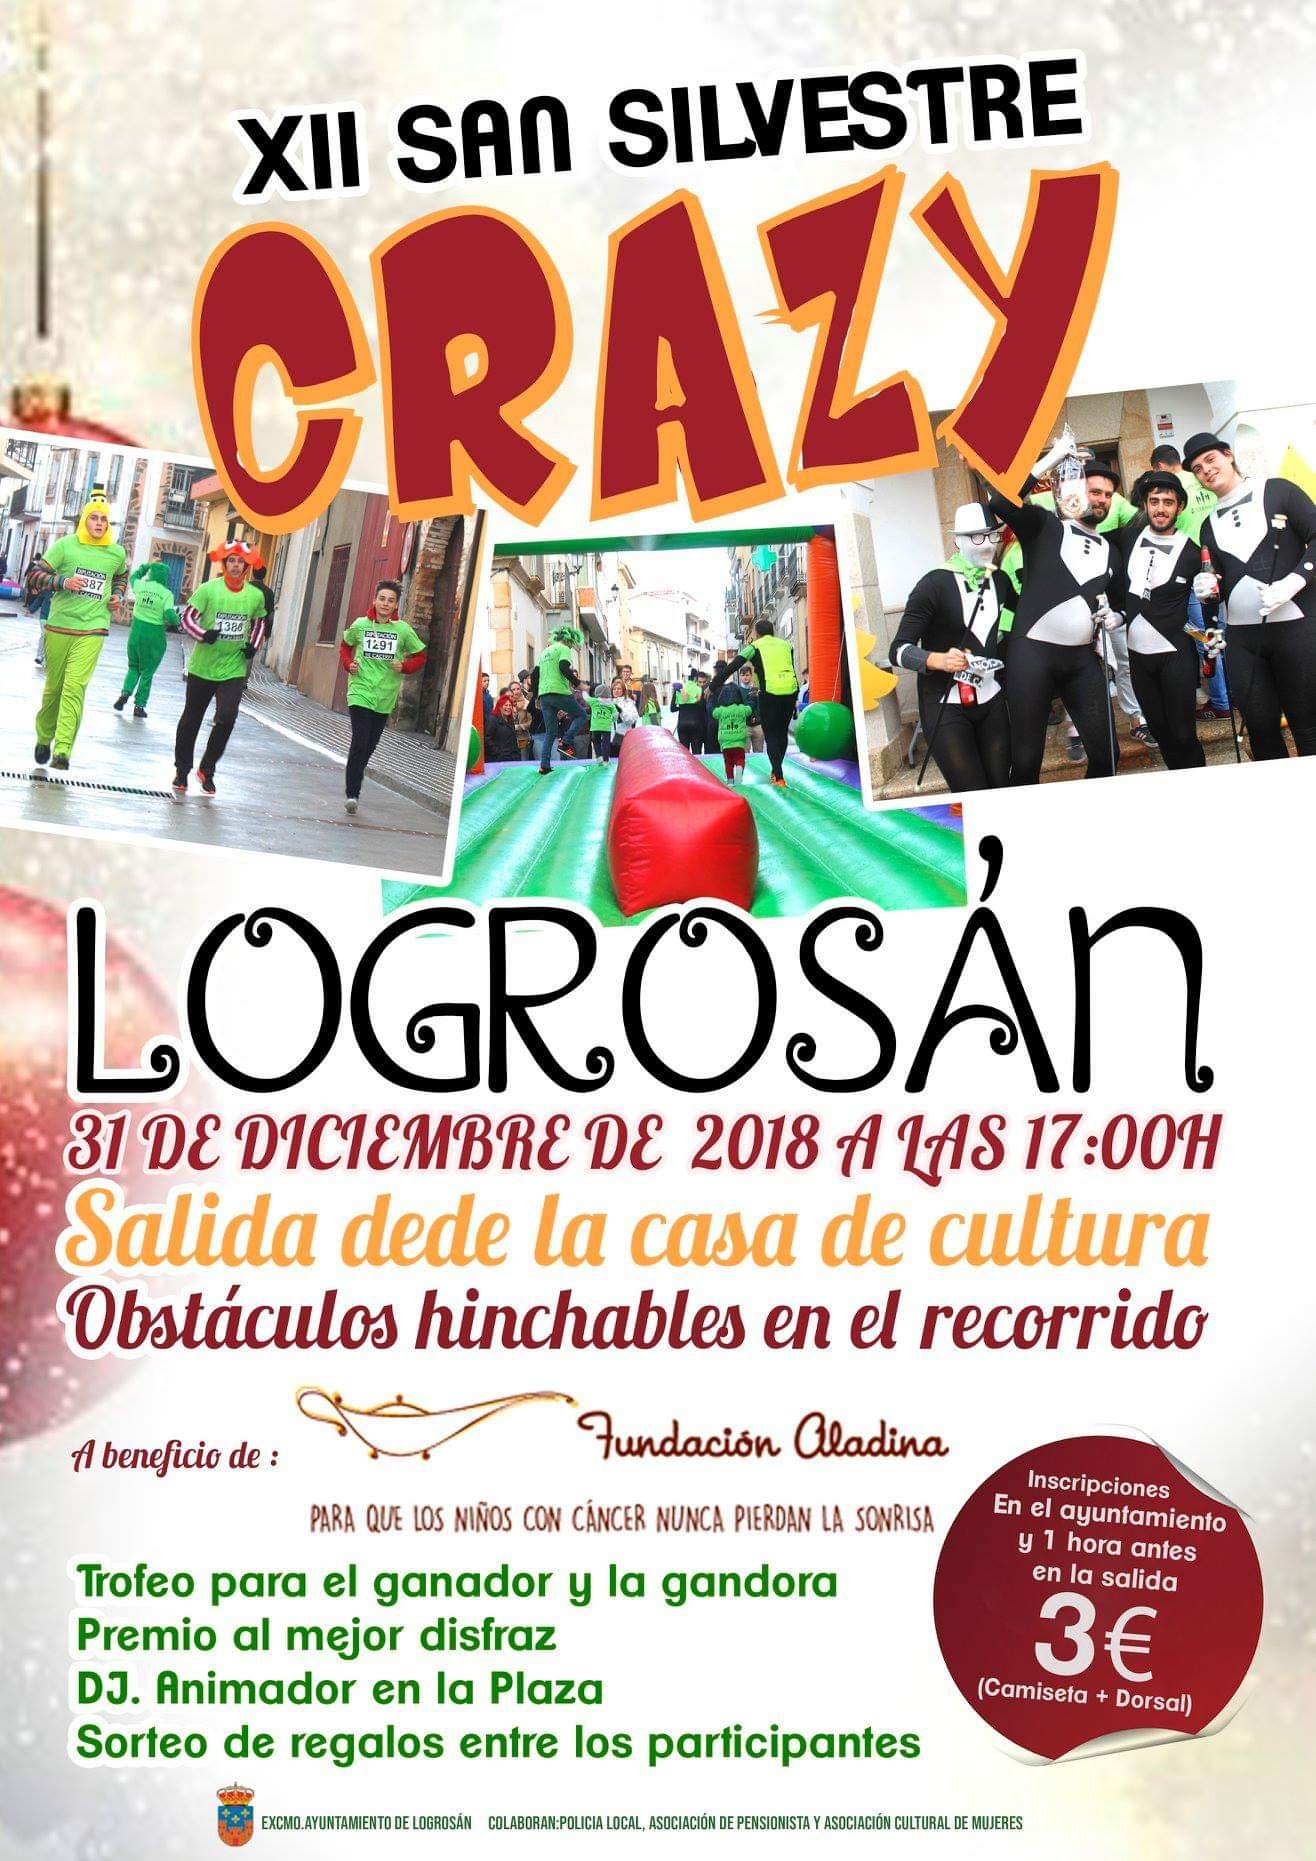 XII San Silvestre Crazy - Logrosán (Cáceres)